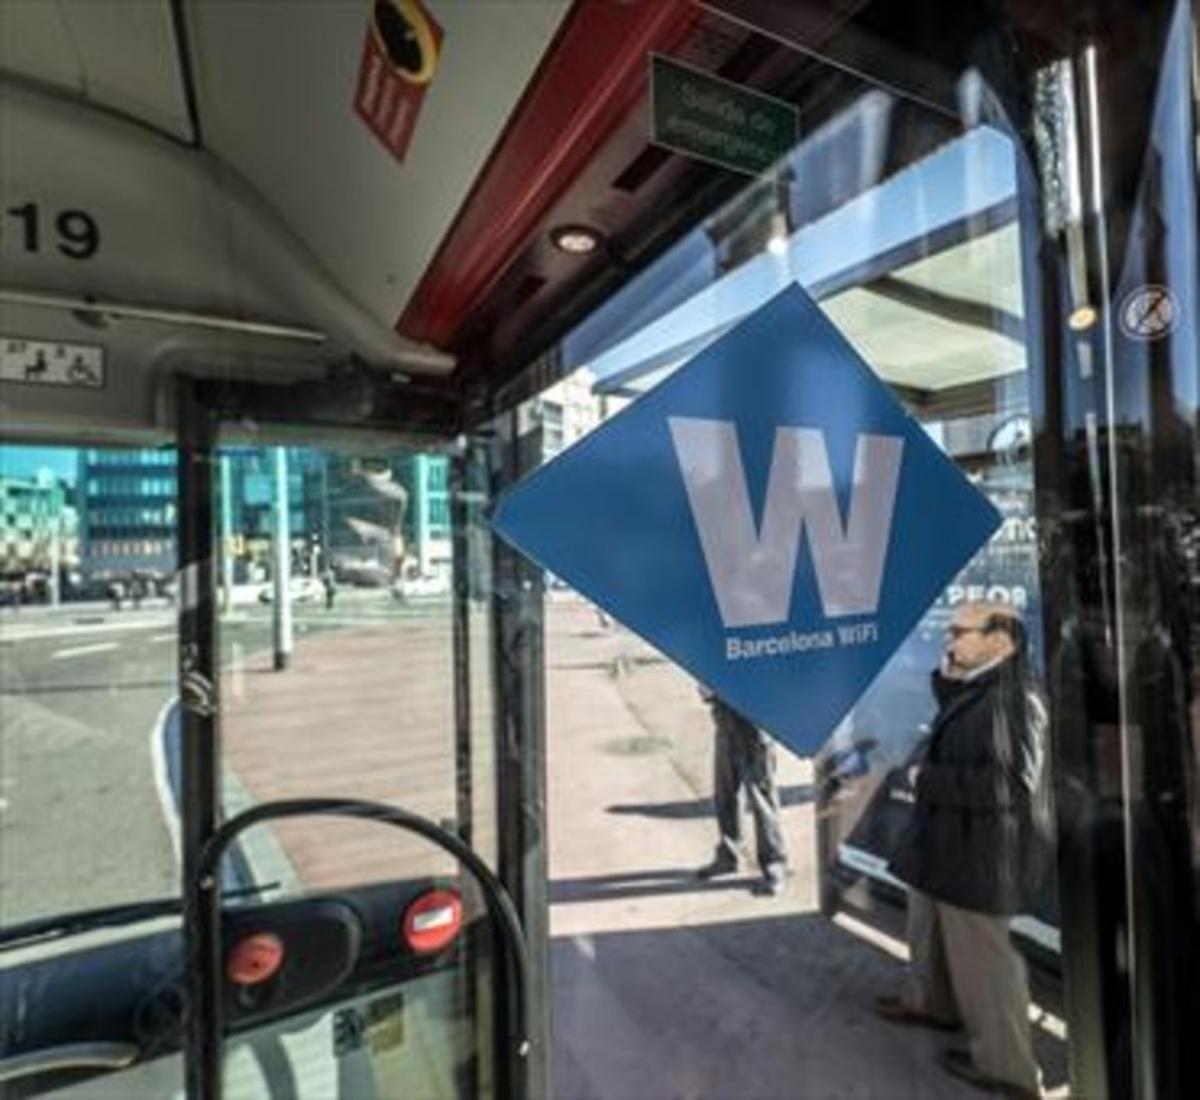 Distintivo de Barcelona Wifi en un autobús de TMB.